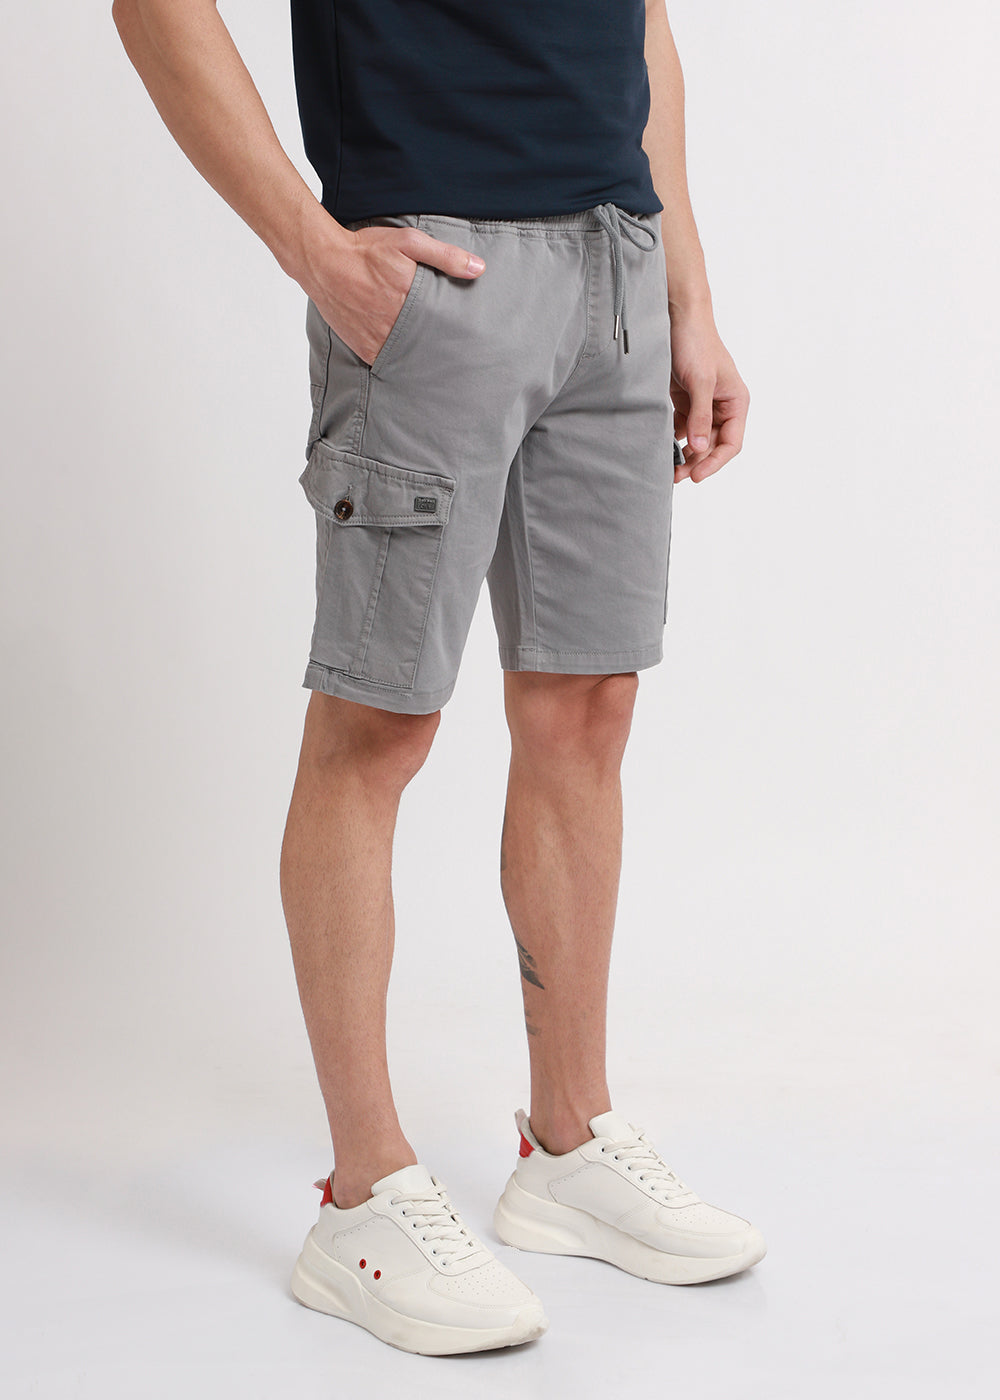 Brocky Grey Cotton Cargo Shorts